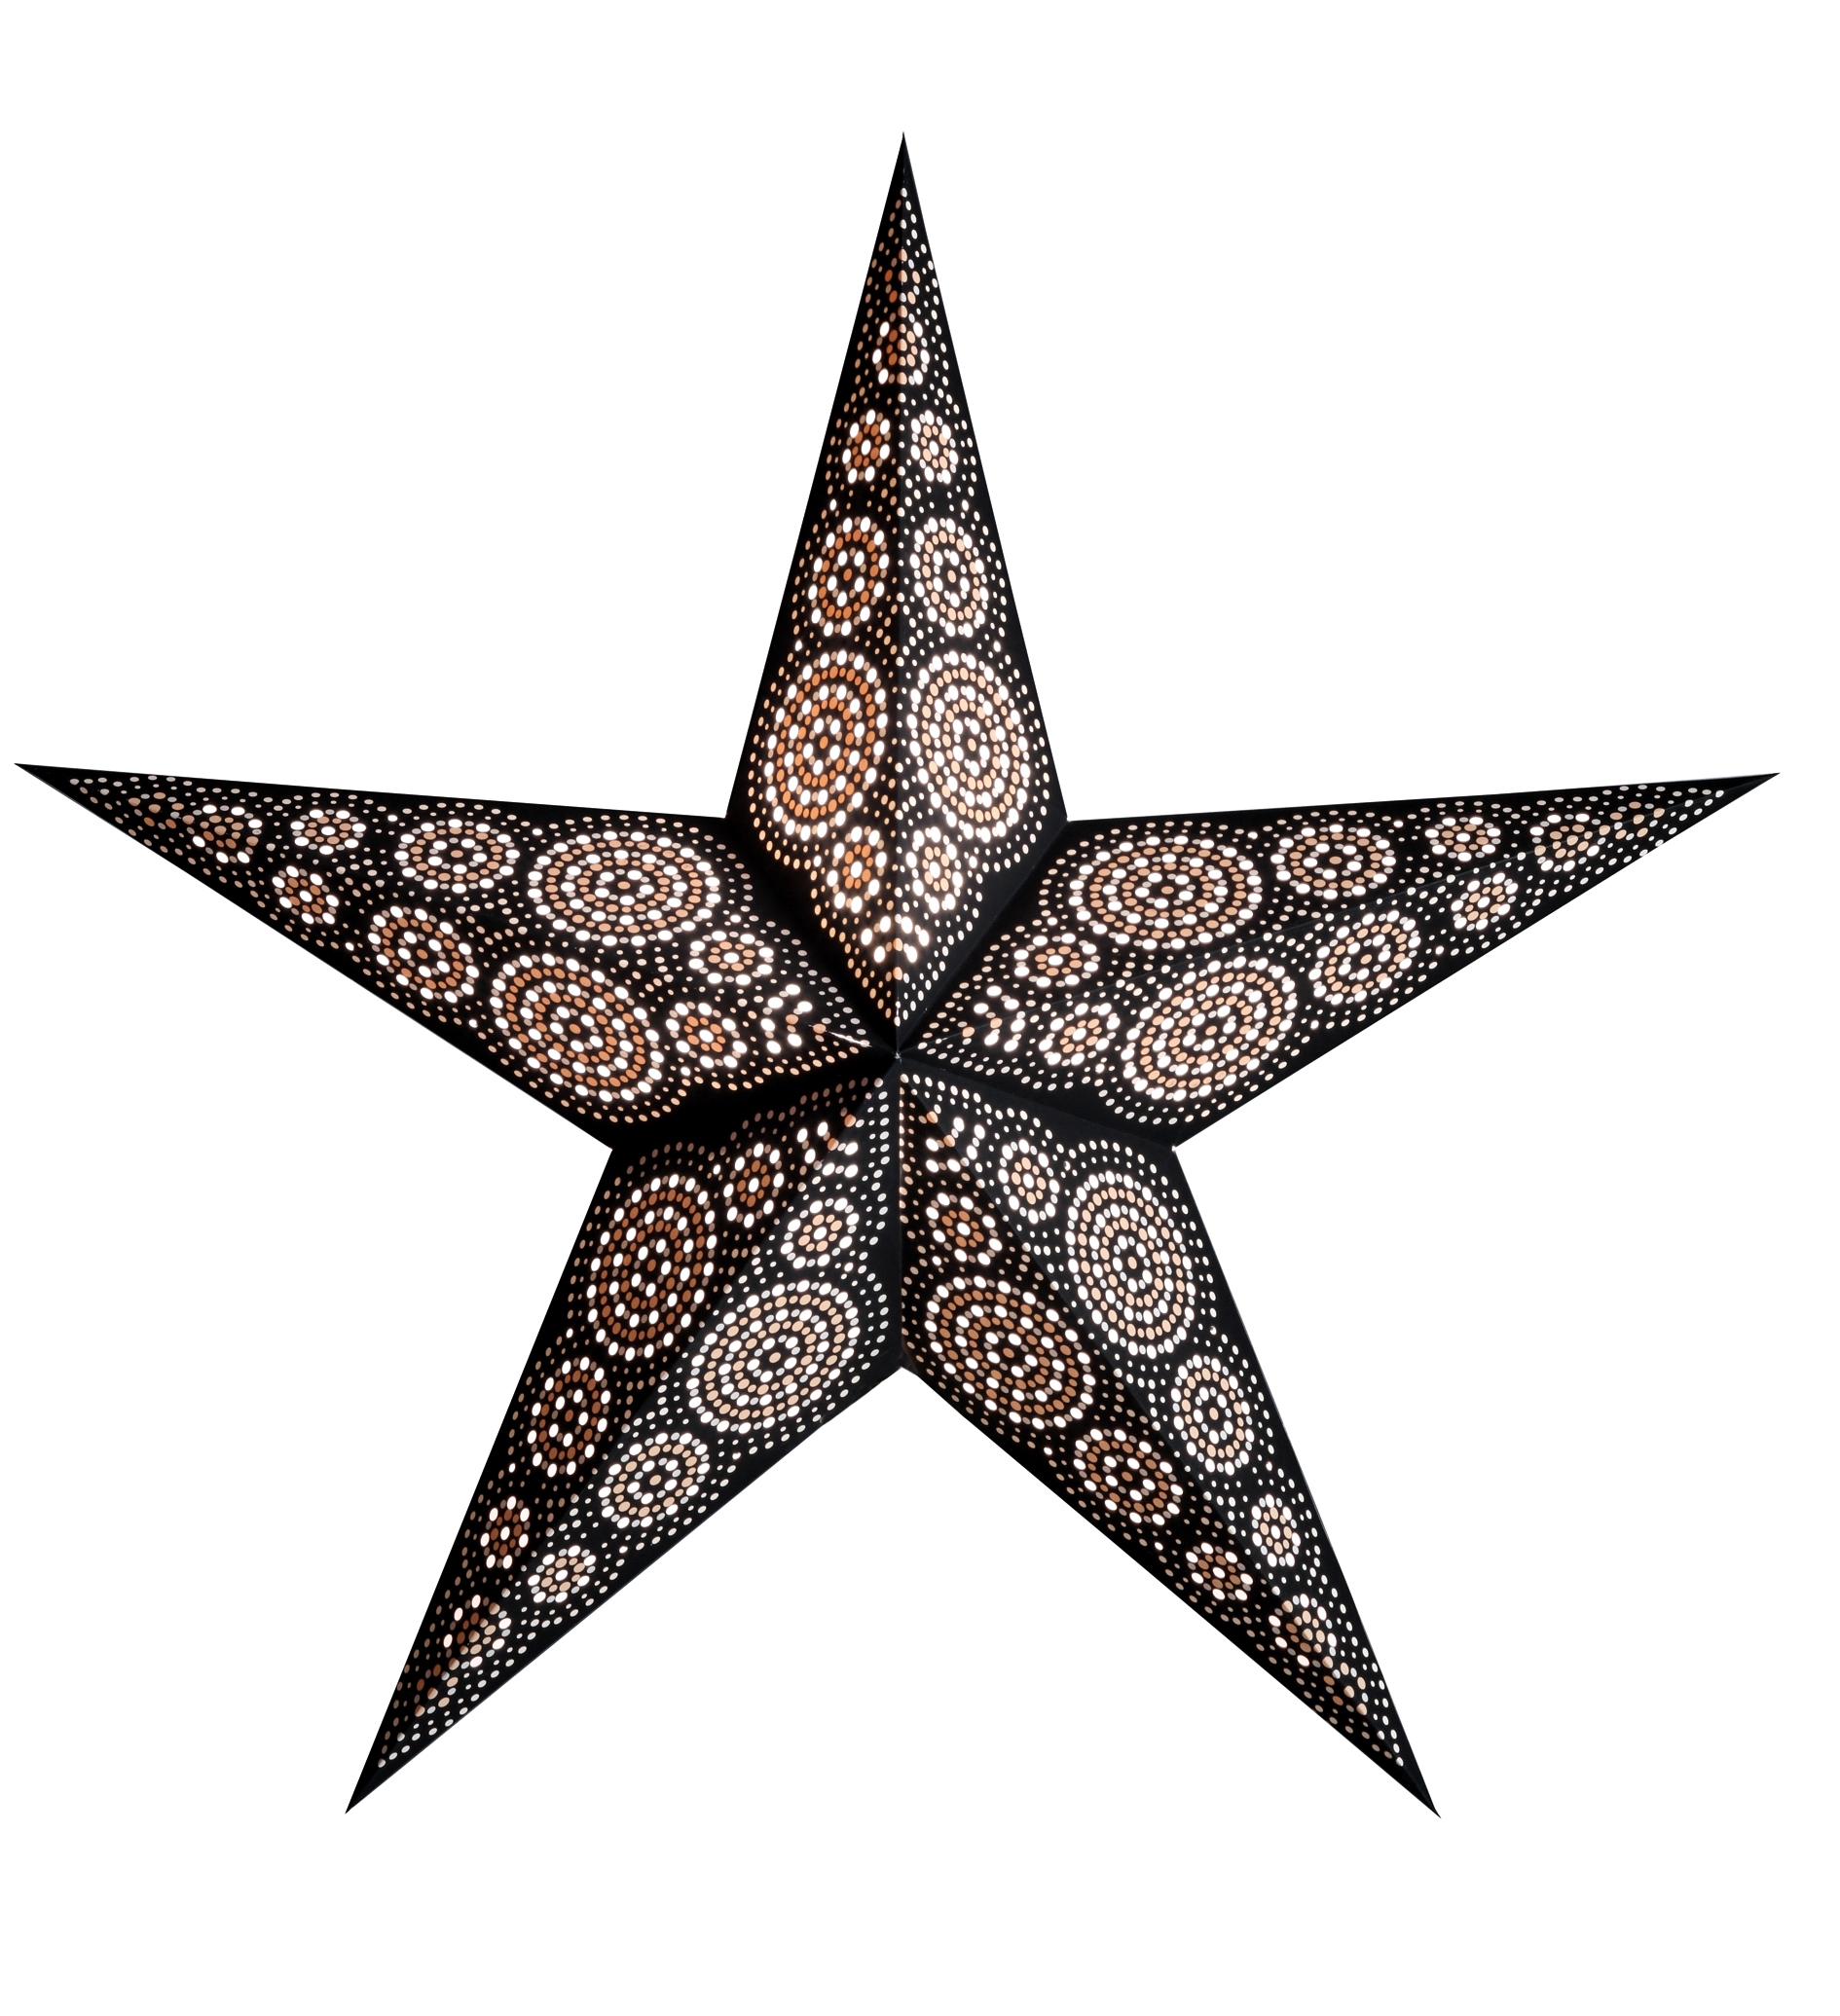 Starlightz Earth Friendly Stern marrakesh black/white, schwarz weiß, D60cm, 302740, Leuchtstern, Faltstern, Deckensterne, Papierstern, 8904137600312